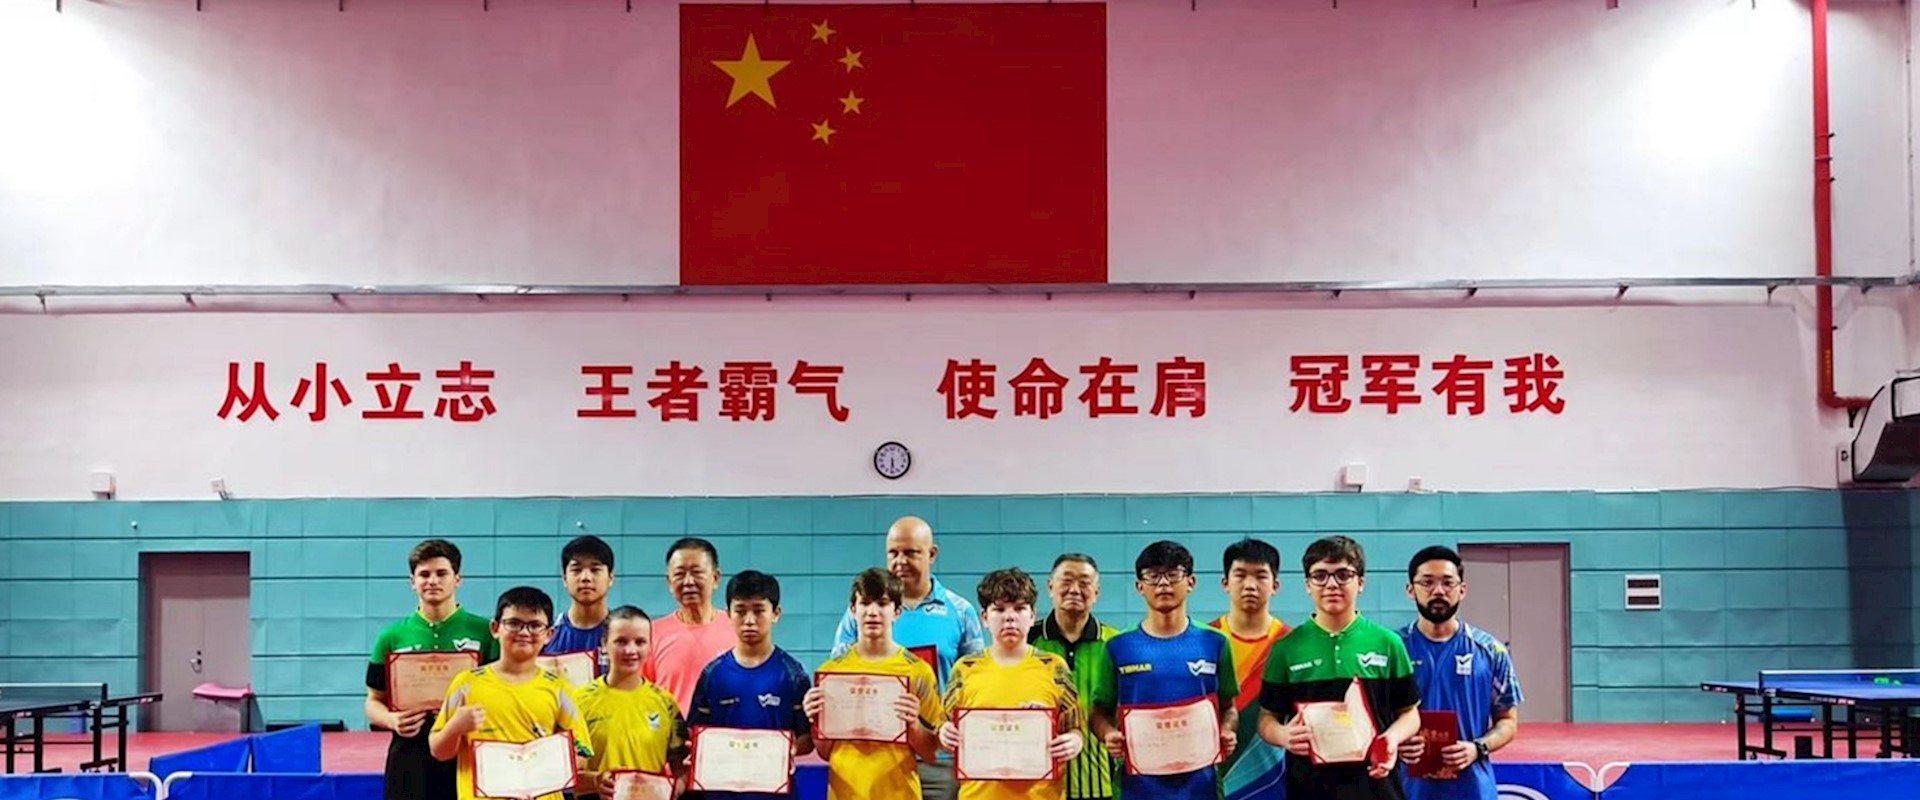 Promessas do tênis de mesa brasileiro encerram Training Camp e trazem muitas lições da China